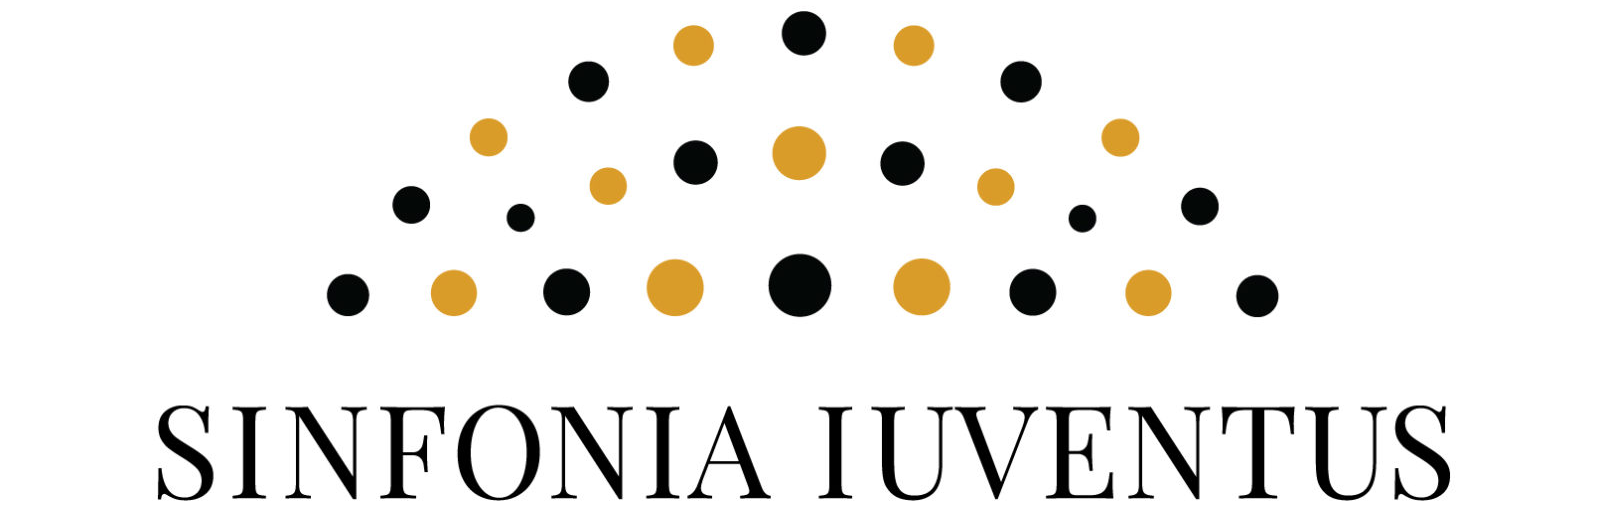 Logotyp Sinfonia Iuventus